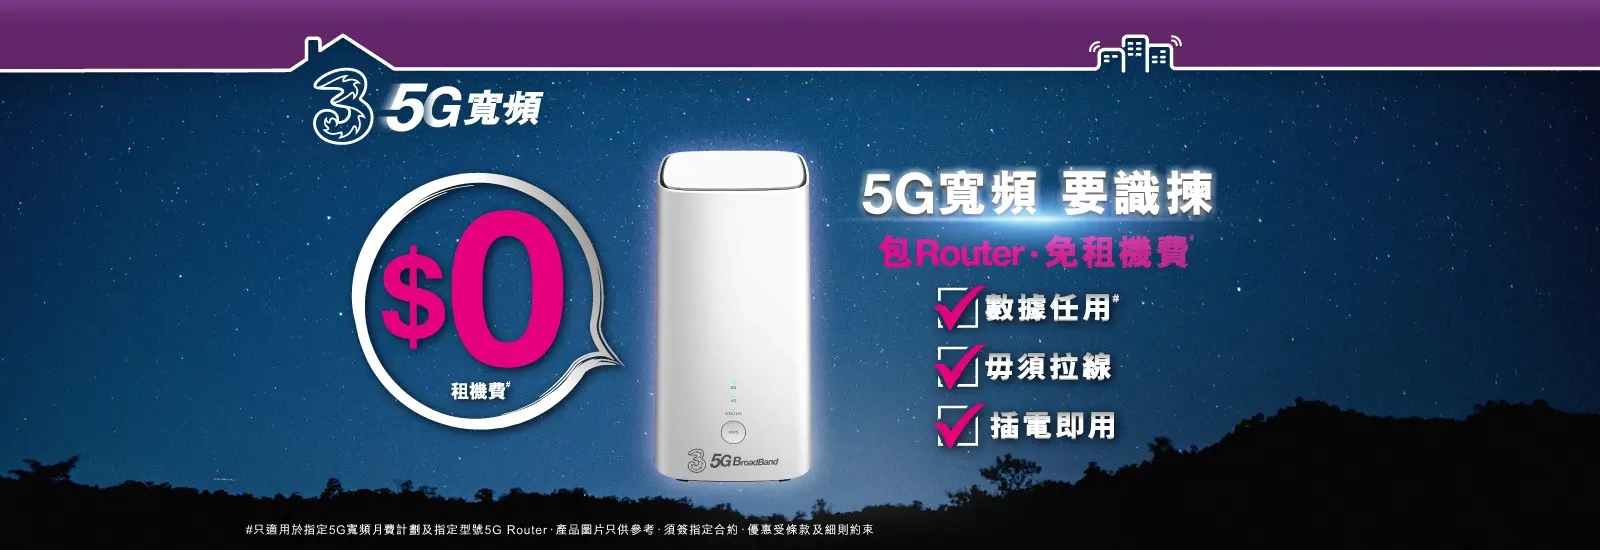 傳統固網問題多多？係時候棄固網，轉用5G寬頻喇！居屋及公屋住戶在2022年8月31日前登記3香港5G 限時寬頻優惠，即可每月$88享用5G寬頻任用連特選5G Wi-Fi Router 或 +$38/月享3HK 5G CPE MC888 ! 立即申請，享用最神家居上網組合!